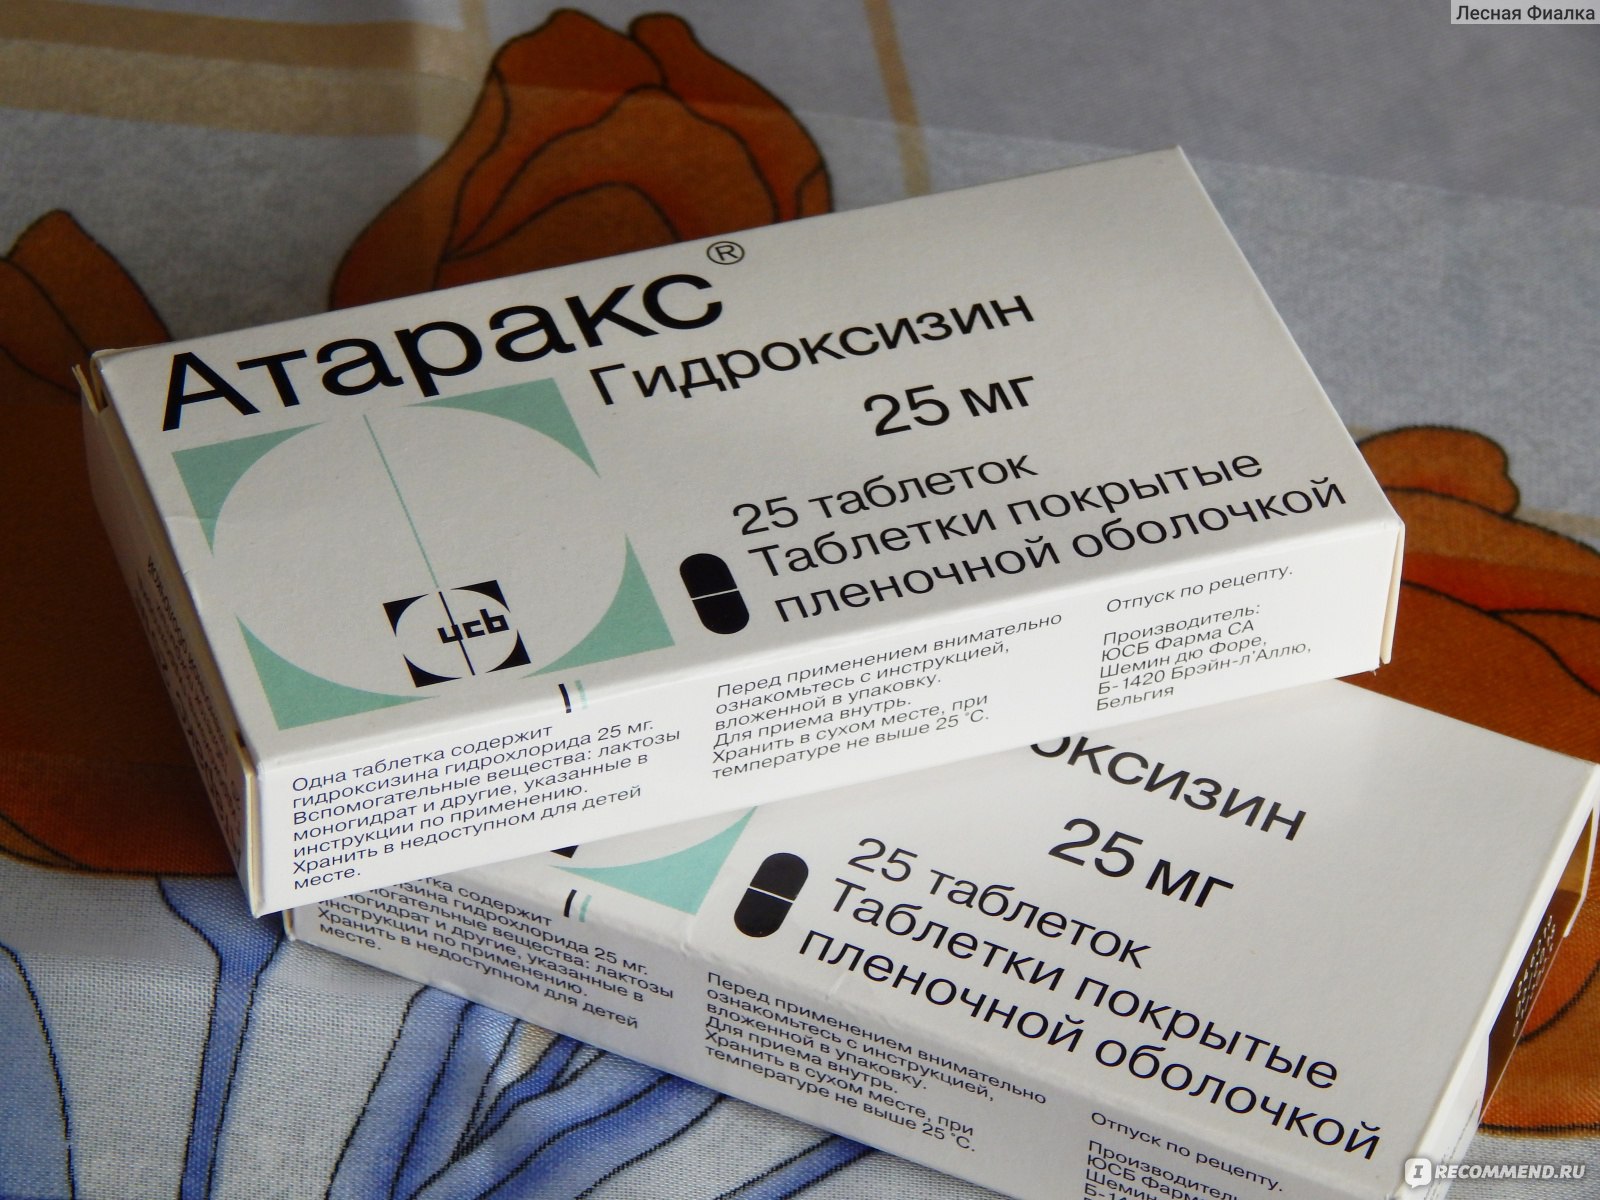 Атаракс таблетки инструкция отзывы врачей и пациентов